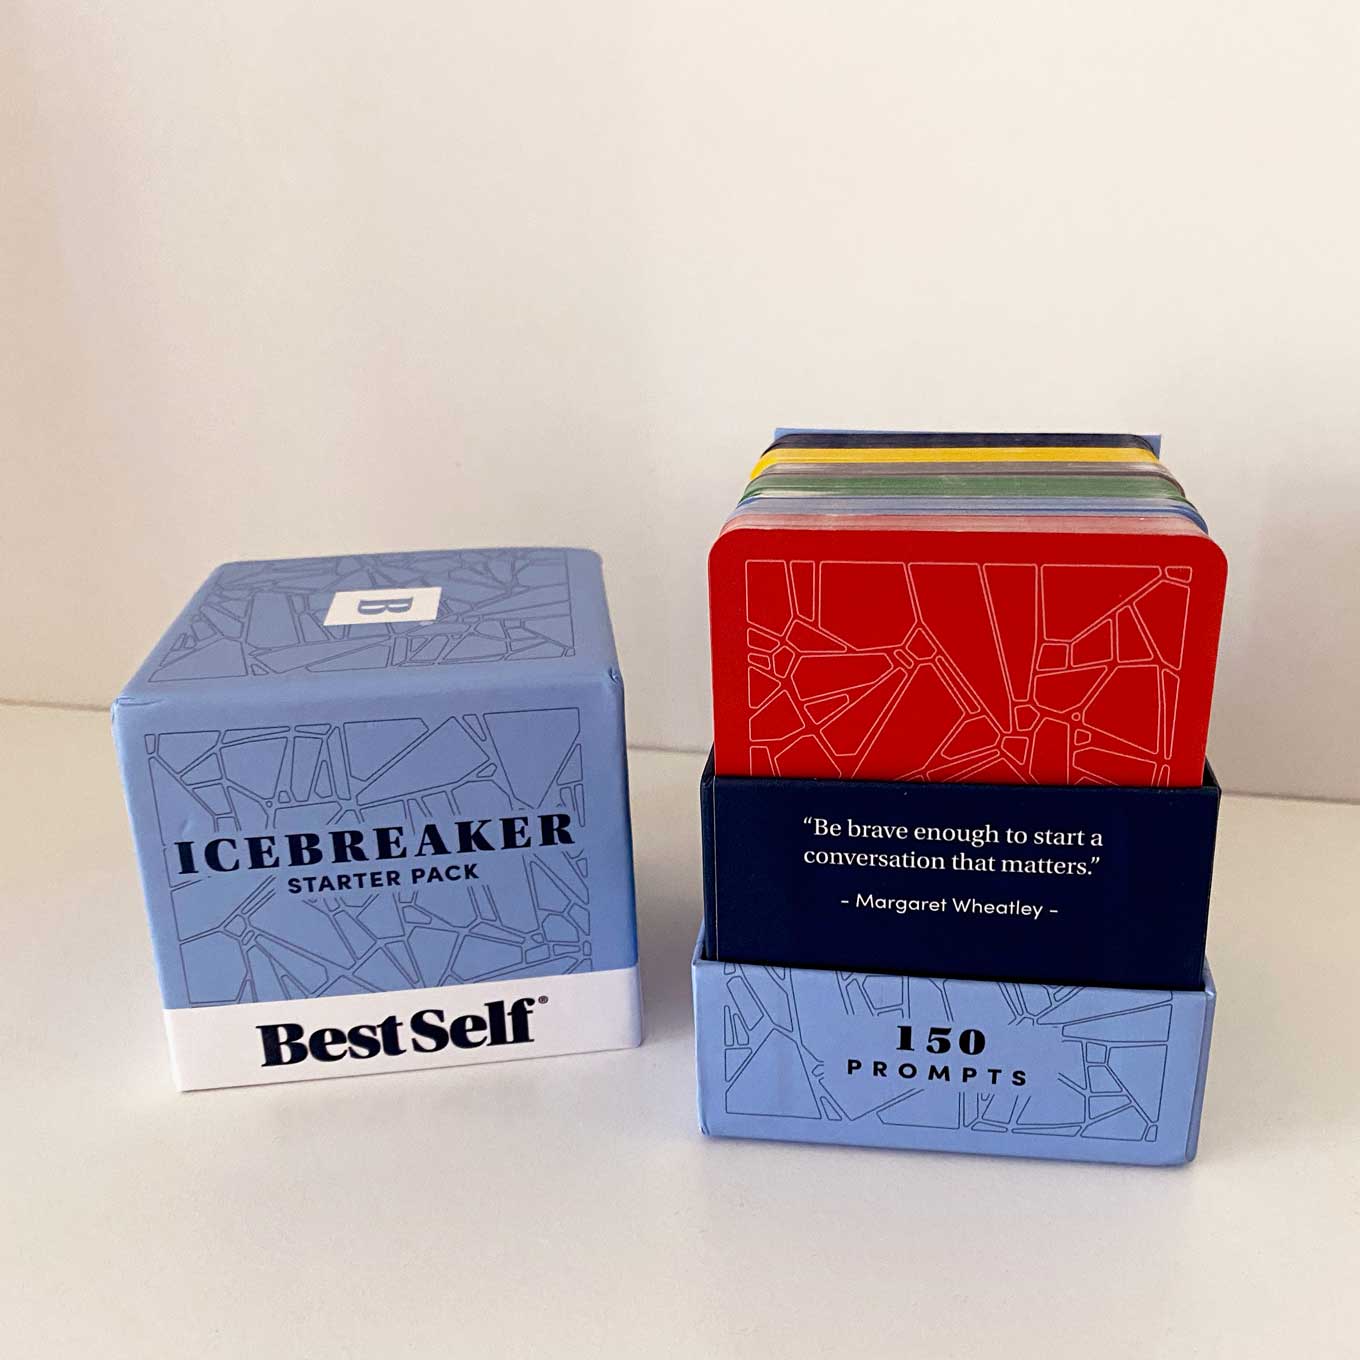 Box for Best Self Co. met de woorden: Icebreaker Starter Pack / 150 Prompts / "Wees moedig genoeg om een gesprek te beginnen dat ertoe doet."  - Margaret Wheatley